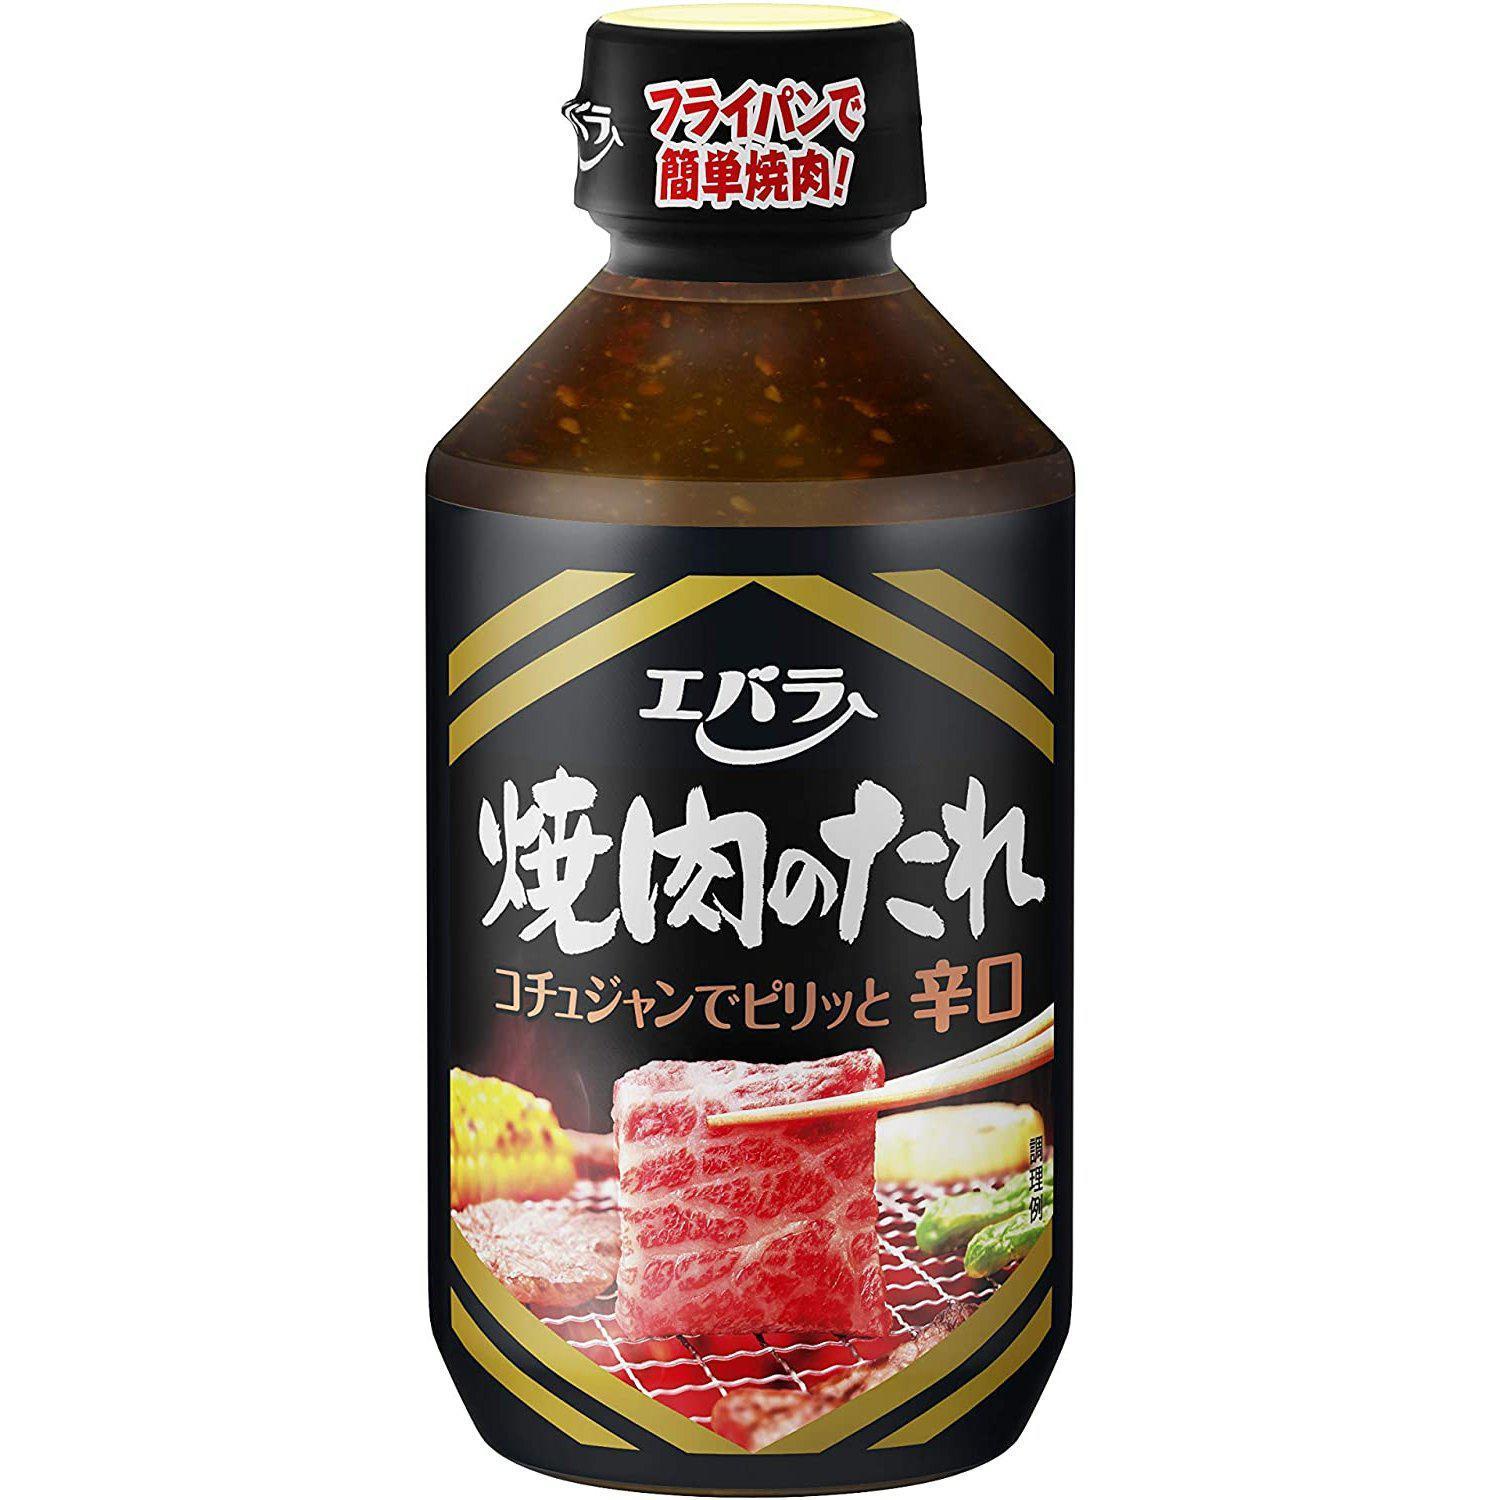 Ebara Yakiniku no Tare Sauce Spicy Japanese BBQ Sauce 300g - YOYO JAPAN